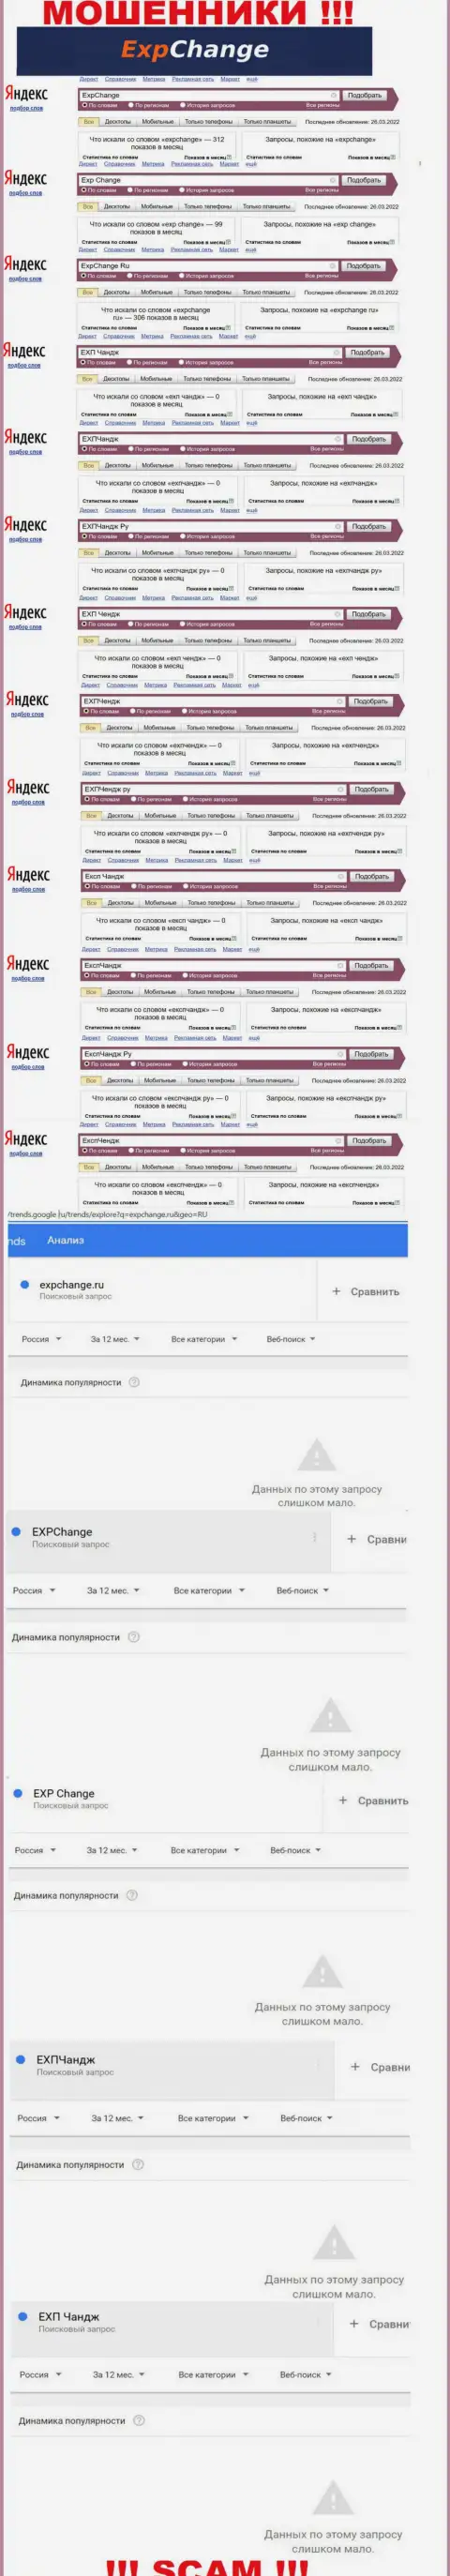 Число онлайн запросов пользователями всемирной сети инфы об мошенниках ExpChange Ru